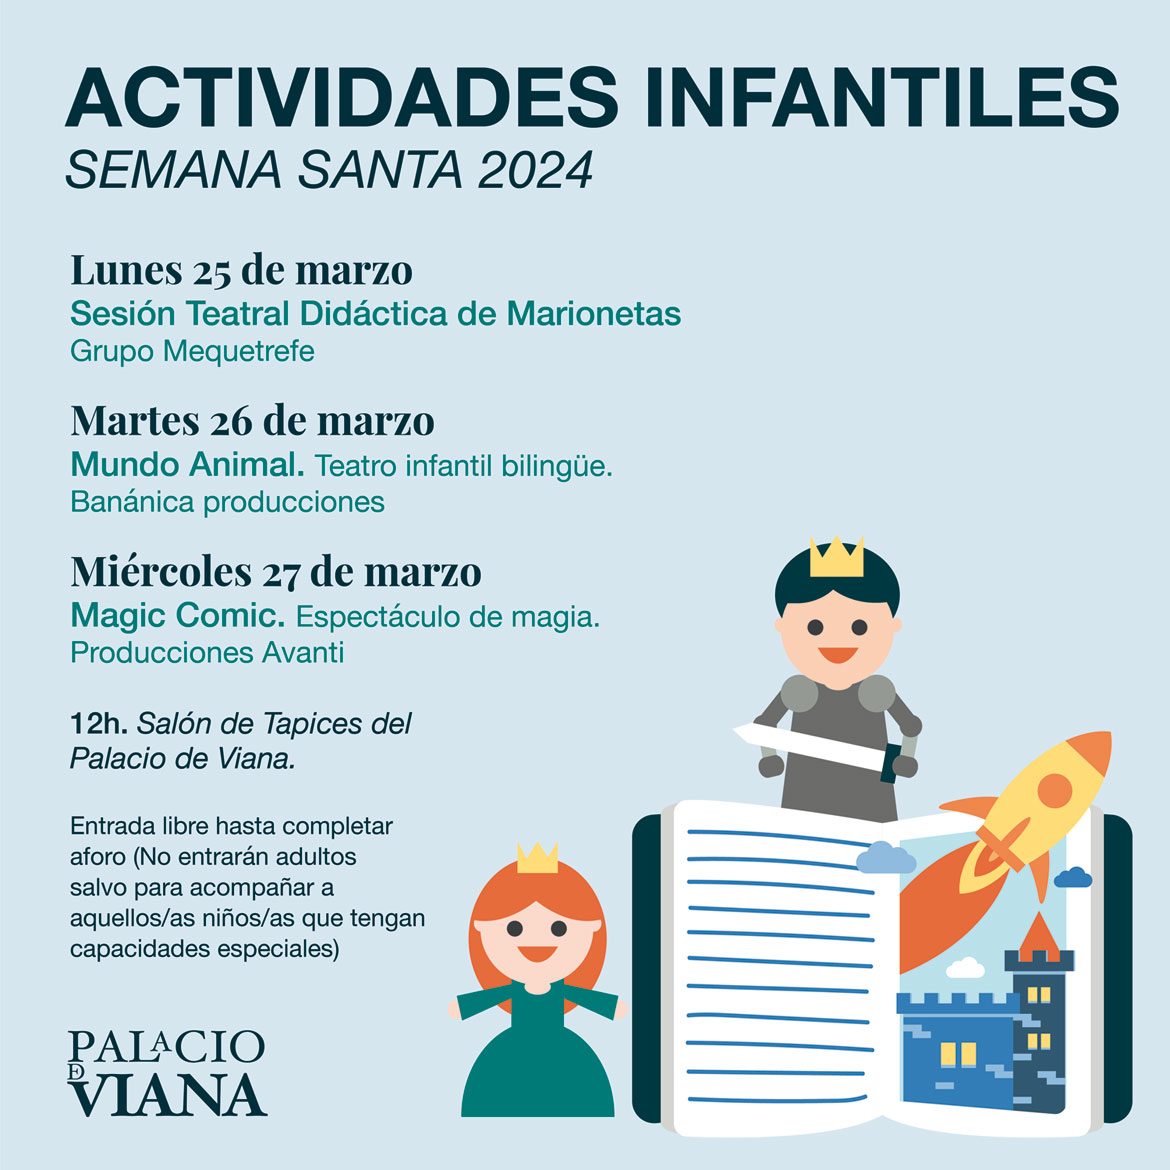 Actividades infantiles en el Palacio de Viana - Semana Santa 2024